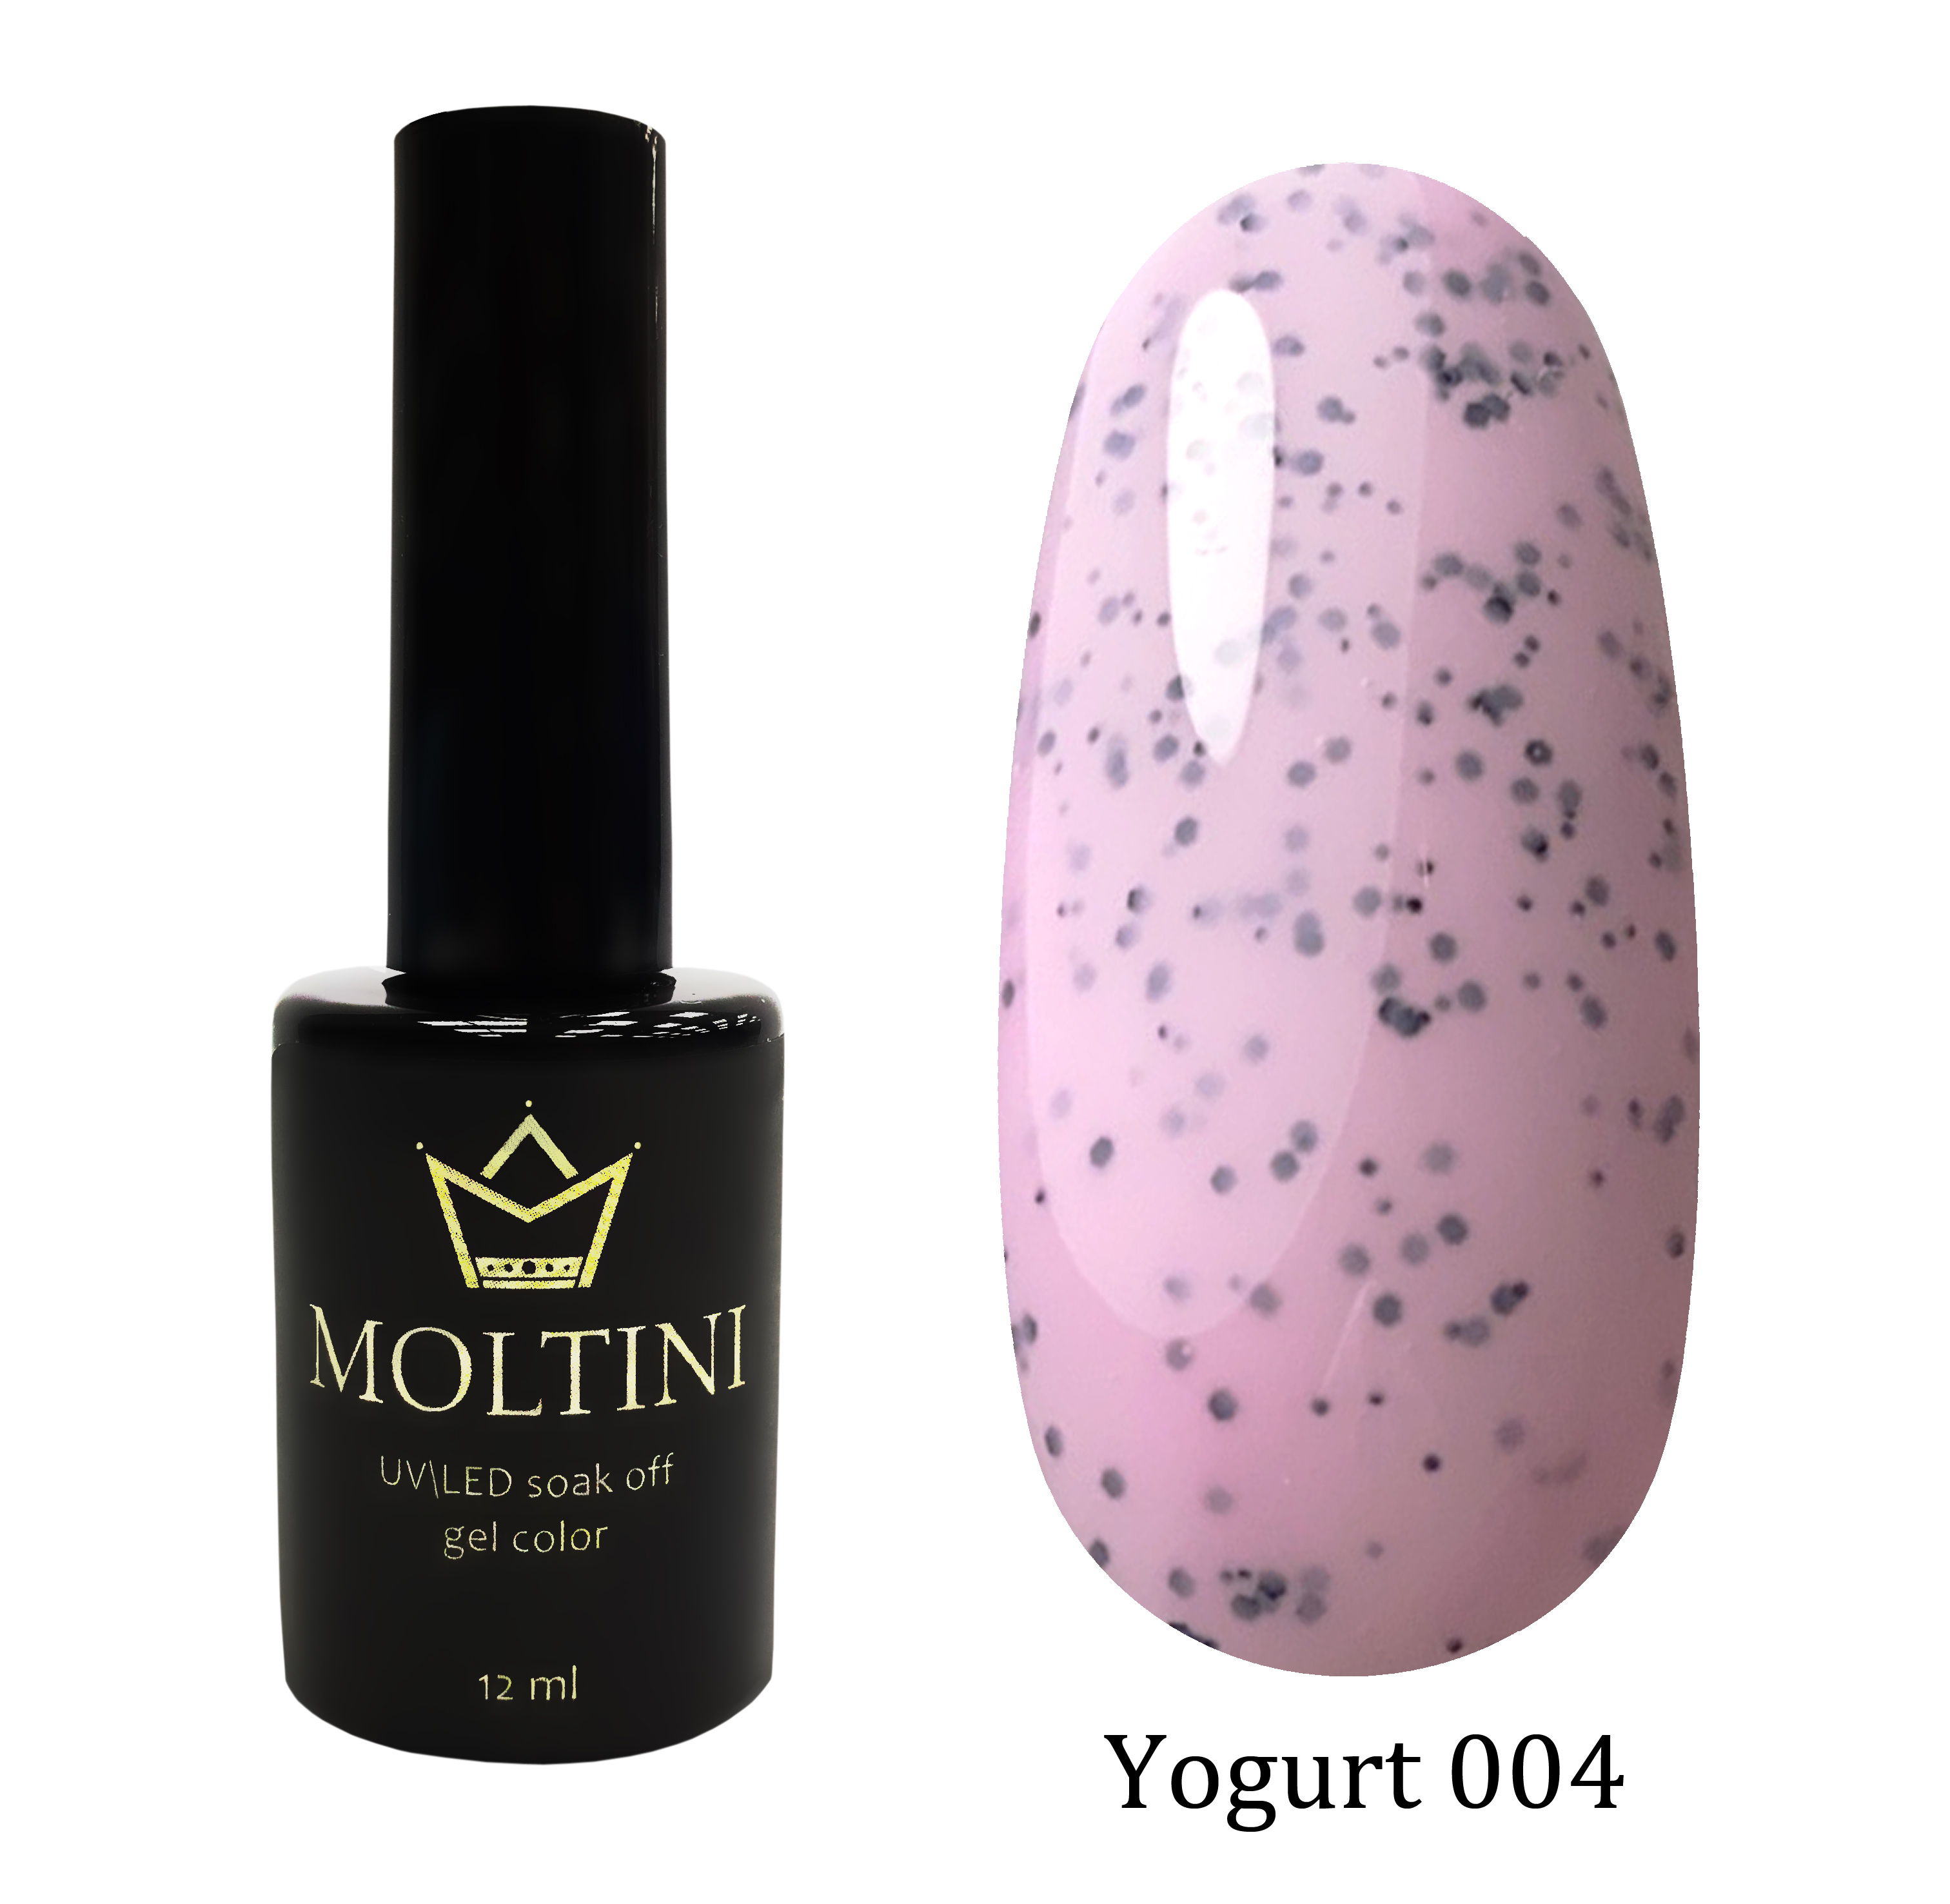 Moltini цветной гель-лак Yogurt 004, 12 мл